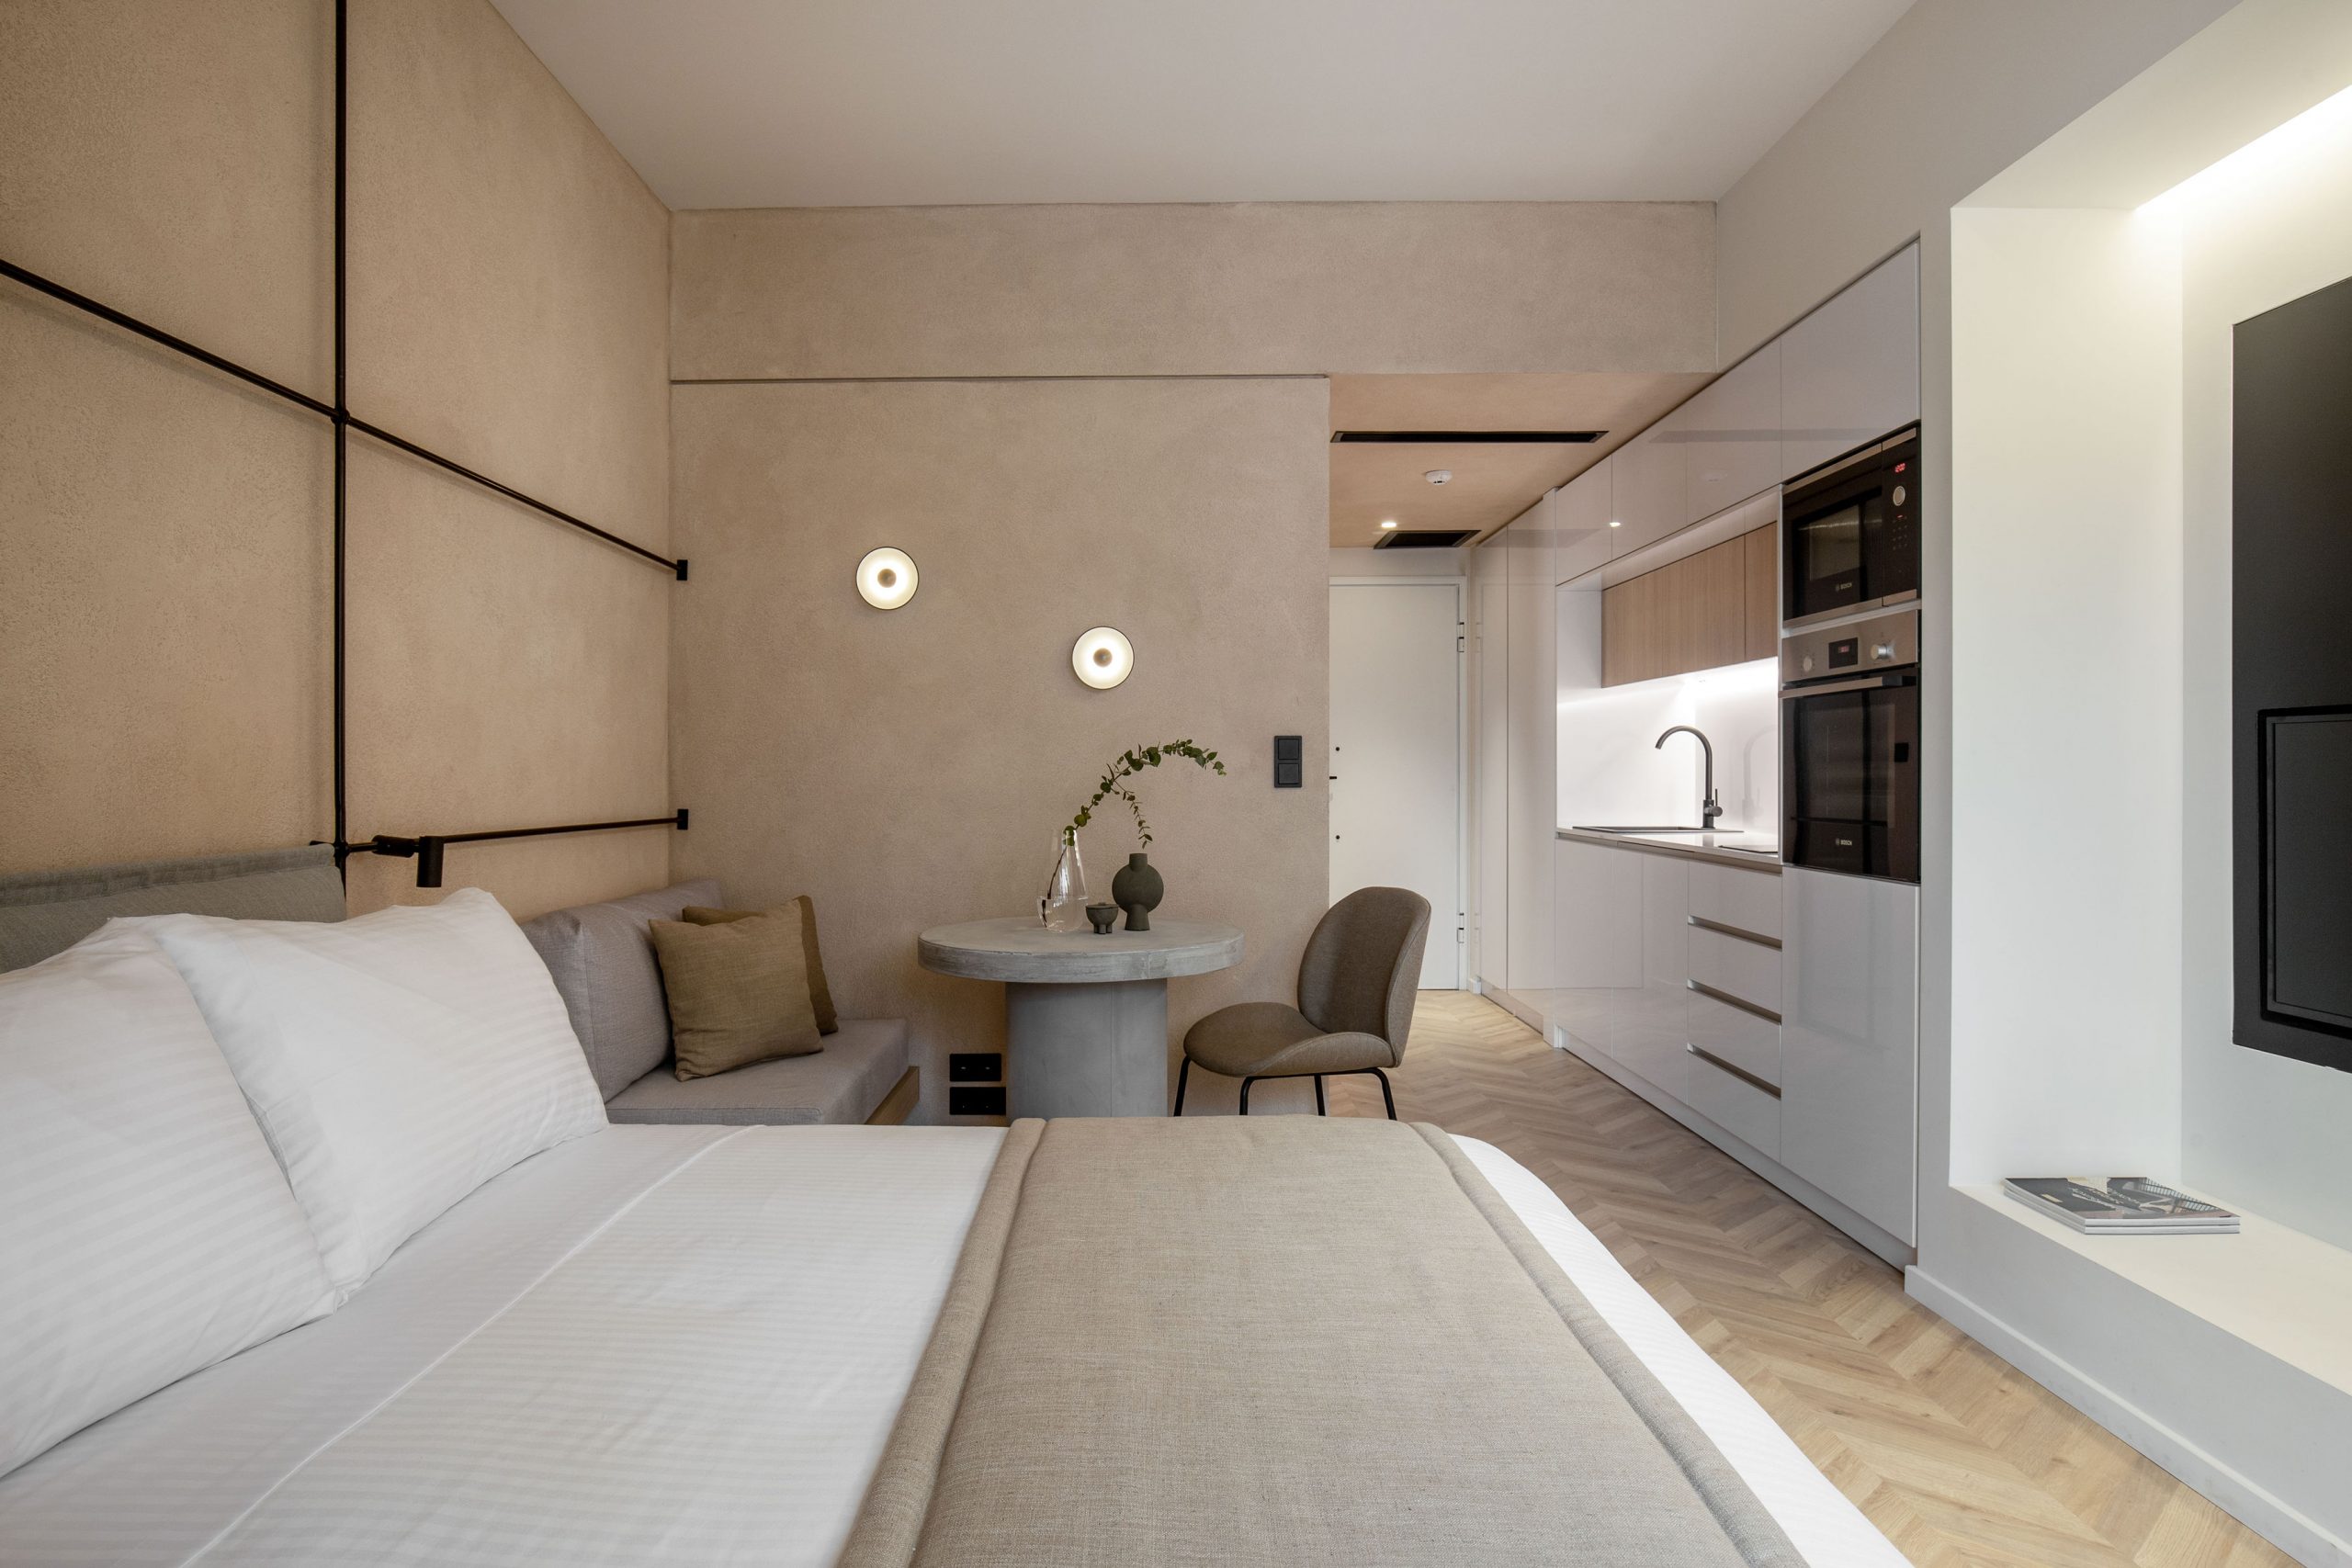 Τhe Newel Metaxourgeio: Το νέο υπερσύγχρονο ξενοδοχείο στο κέντρο της Αθήνας